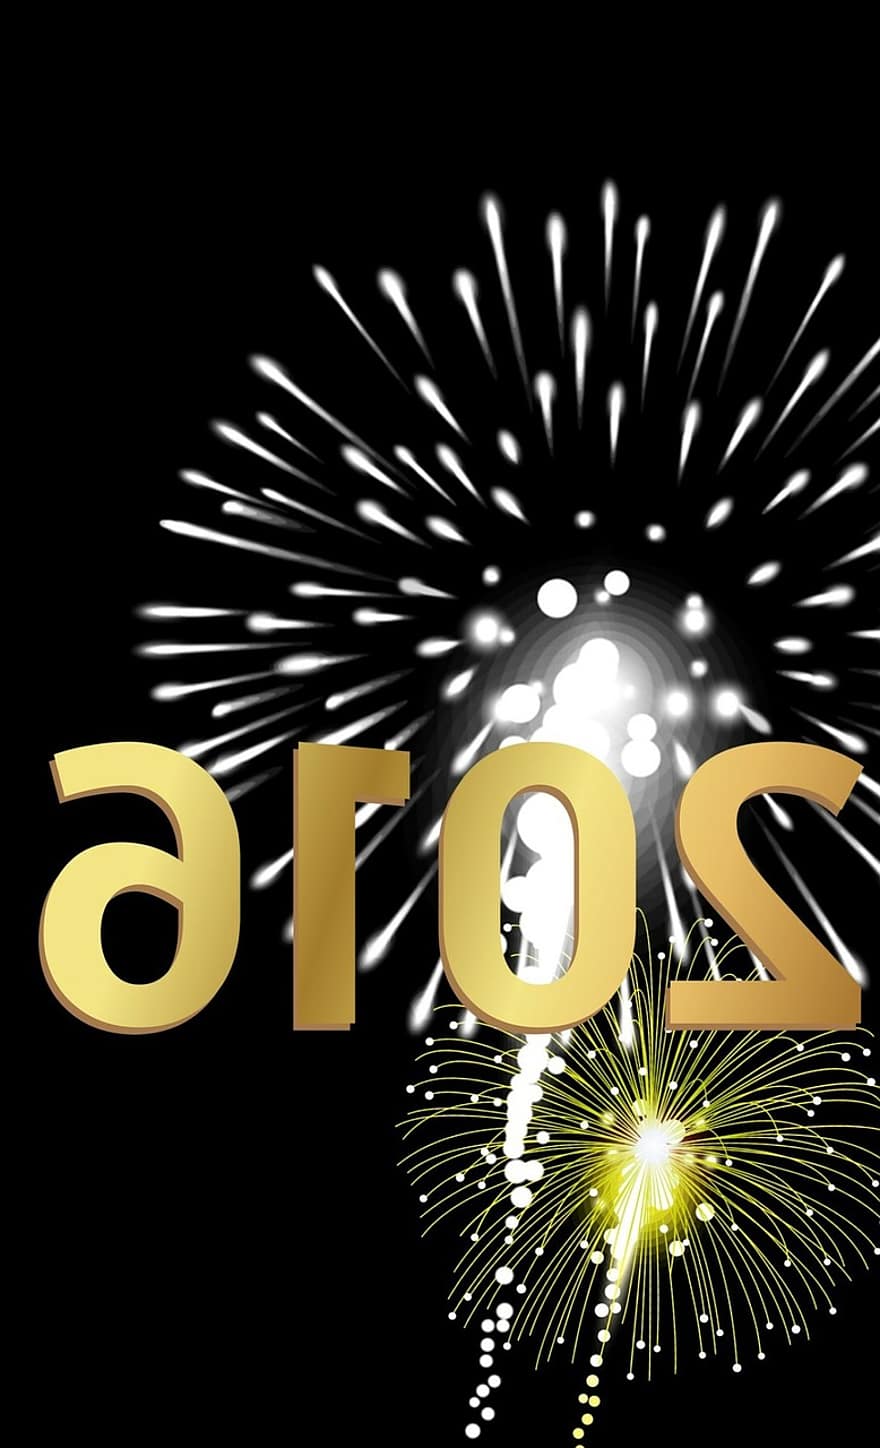 Anul Nou, ziua de anul nou, sylvester, focuri de artificii, situațiile financiare anuale, rachetă, număr, partid, duș de scântei, anul nou 2016, aur